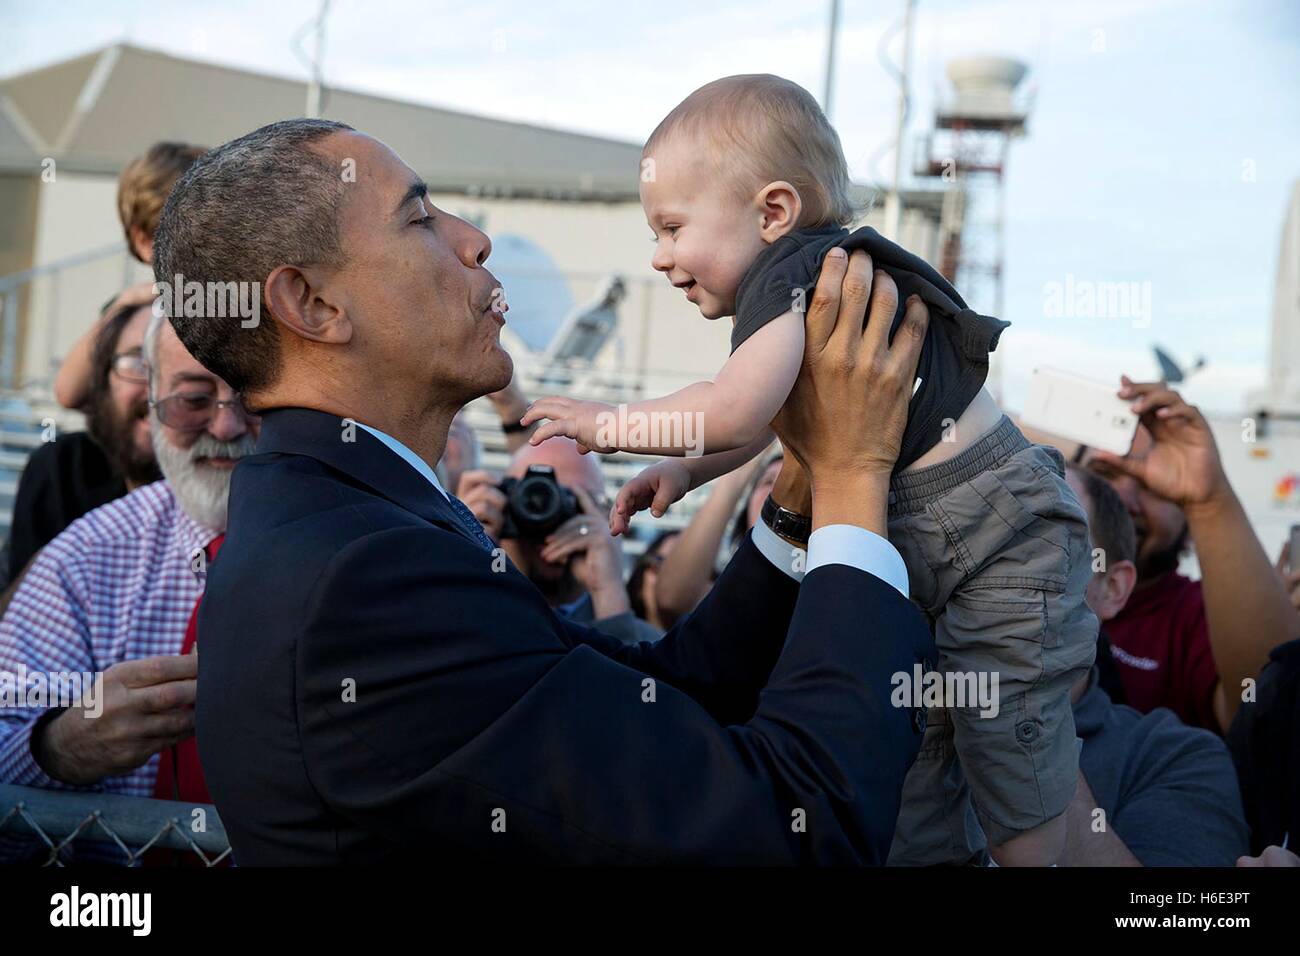 Stati Uniti Il presidente Barack Obama tiene un bambino mentre saluto le persone sull'asfalto all'arrivo all'Aeroporto Internazionale di San Francisco il 12 febbraio 2015 a San Francisco, California. Foto Stock